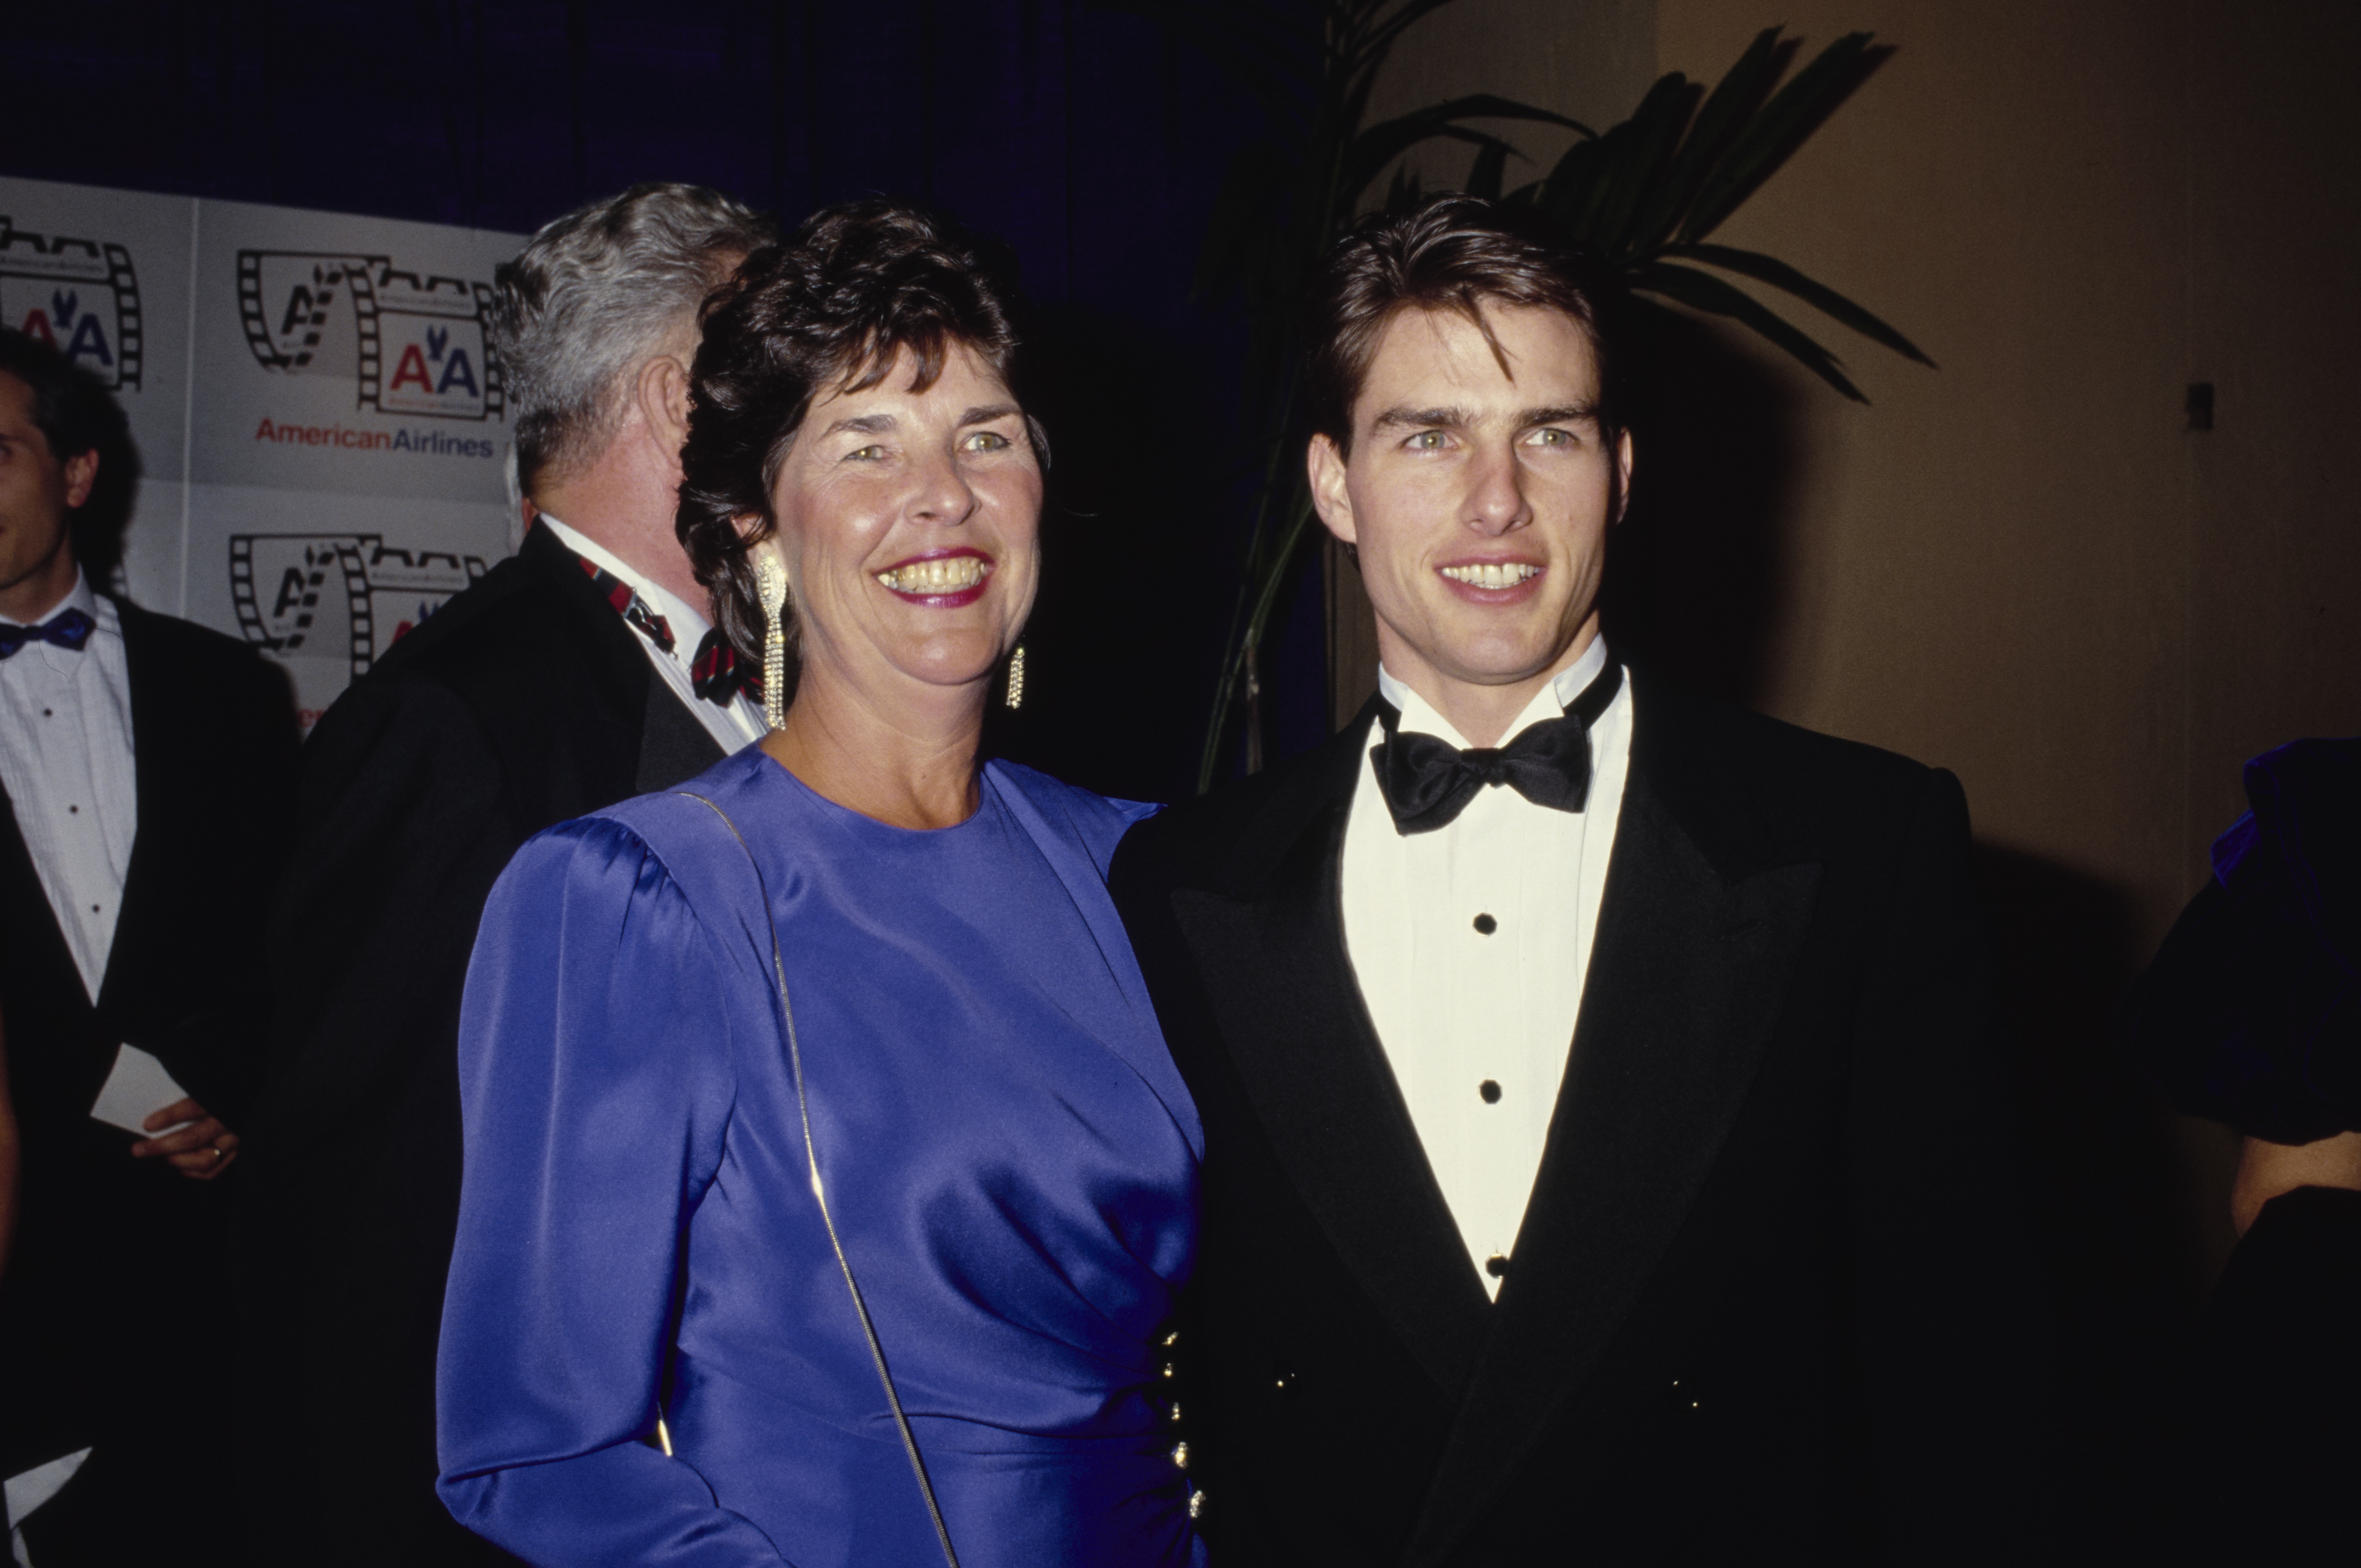 Mary Lee Pfeiffer y Tom Cruise en la octava edición de los Premios Anuales del Cine Americano en Beverly Hills, 1991. | Foto: Getty Images